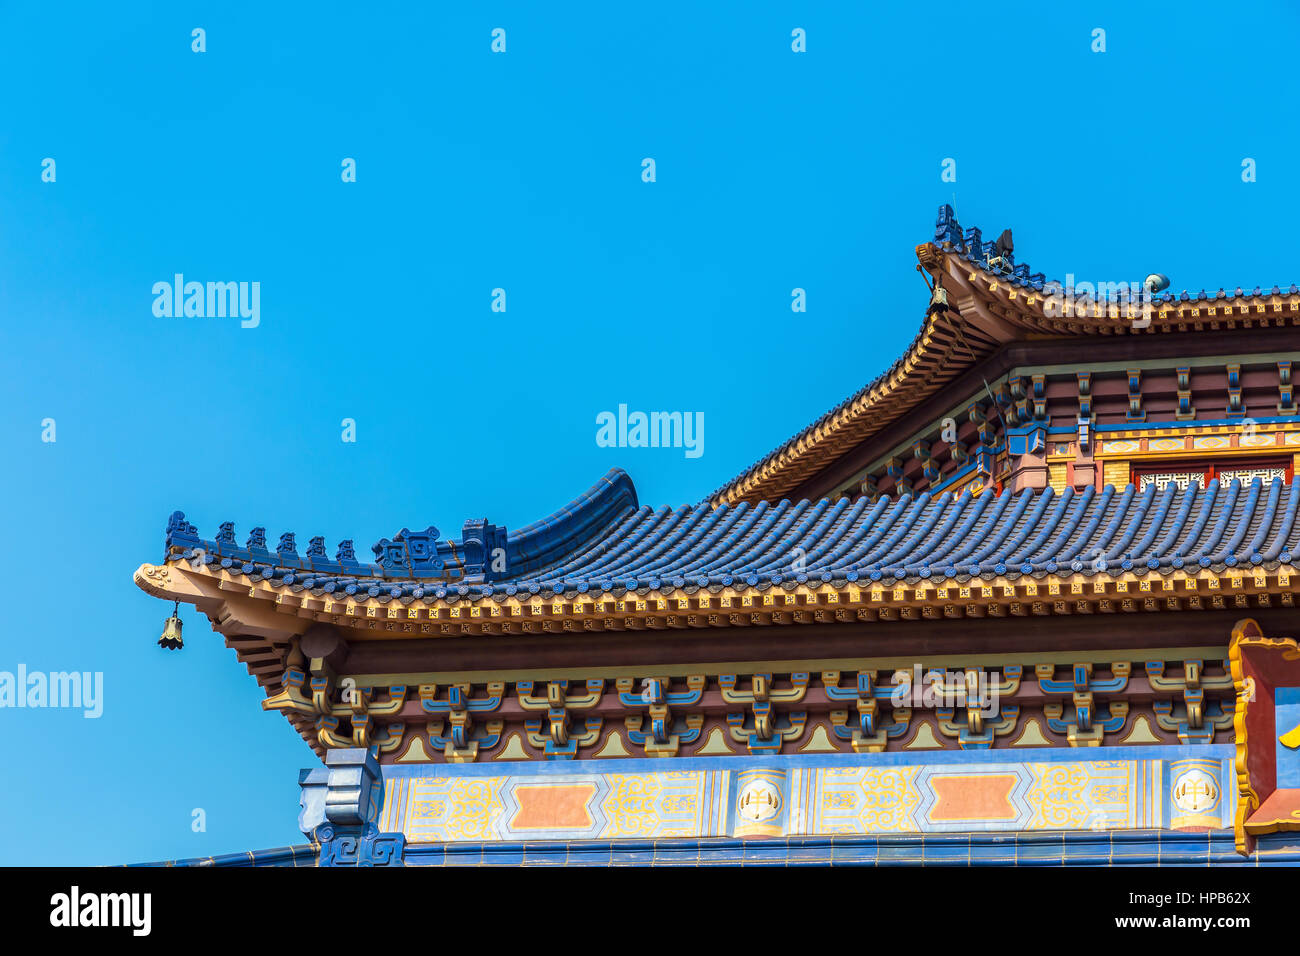 guangzhou zhongshan memorial hall Stock Photo